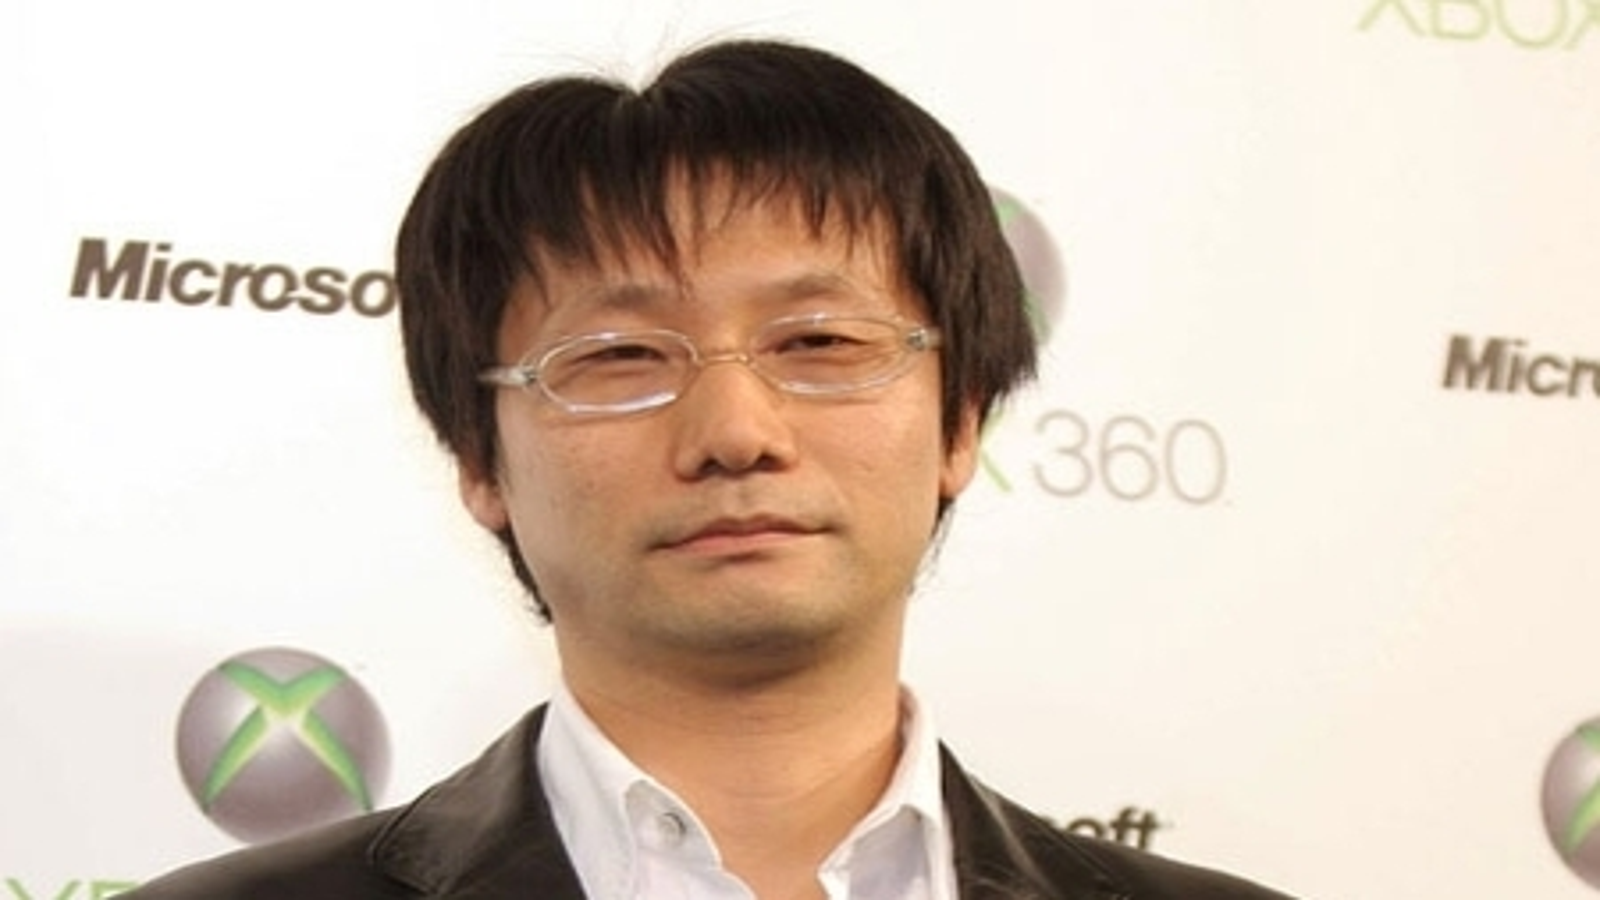 Evolution of Hideo Kojima Games (1987 -2019) 